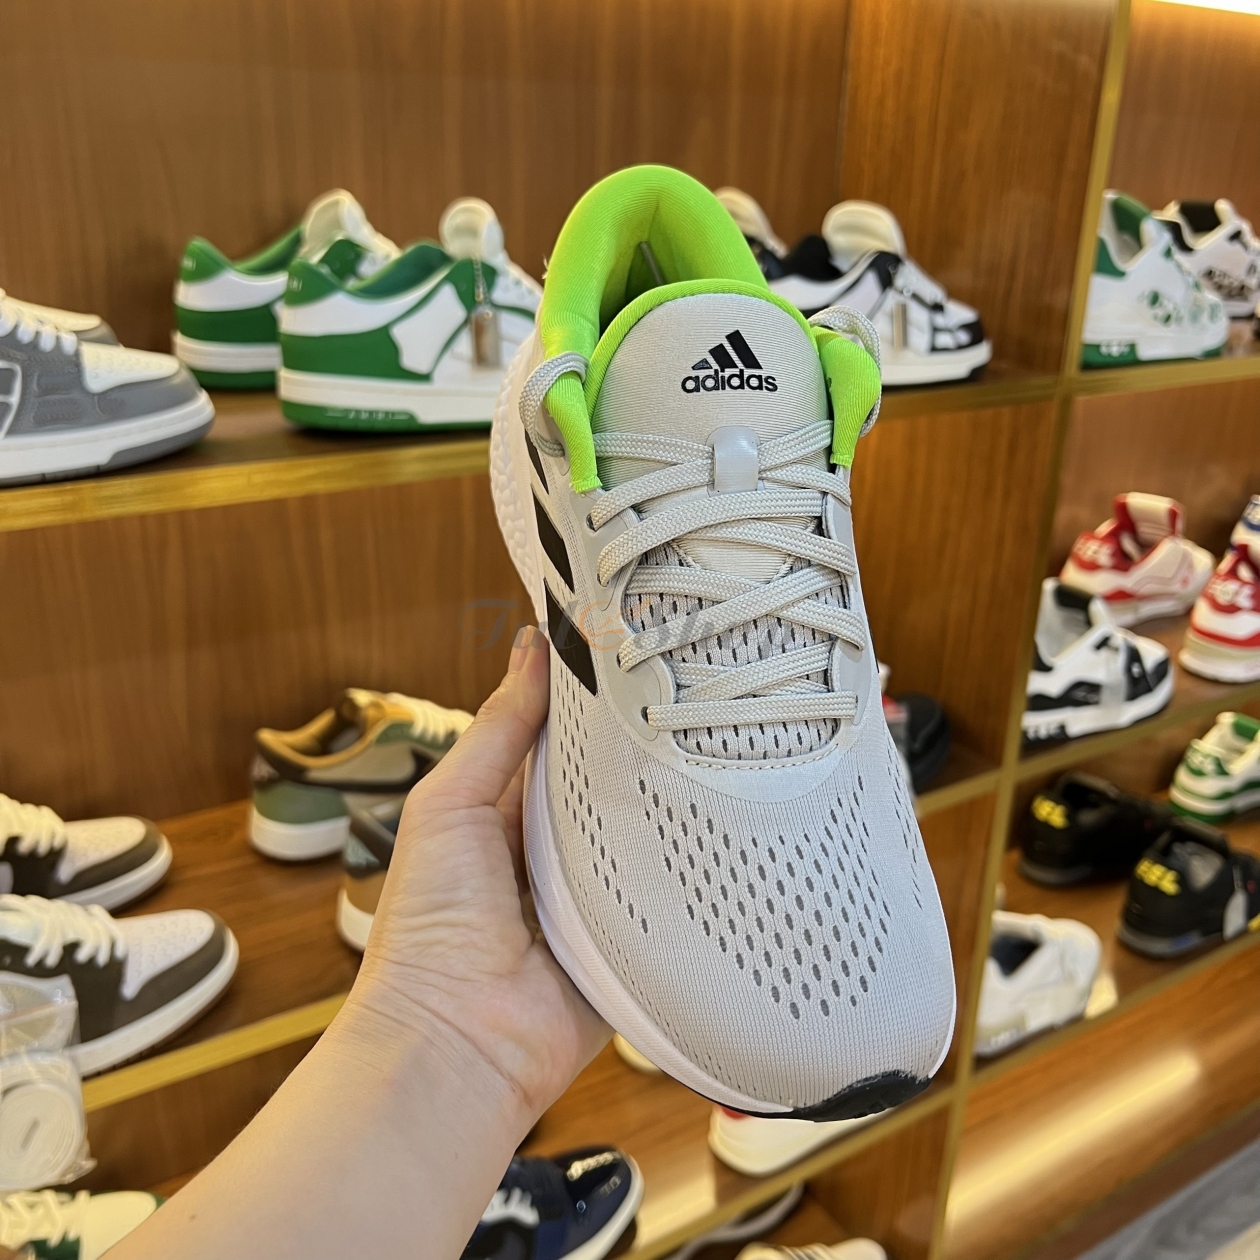 Adidas cho trình làng mẫu giày Supernova đẳng cấp mới